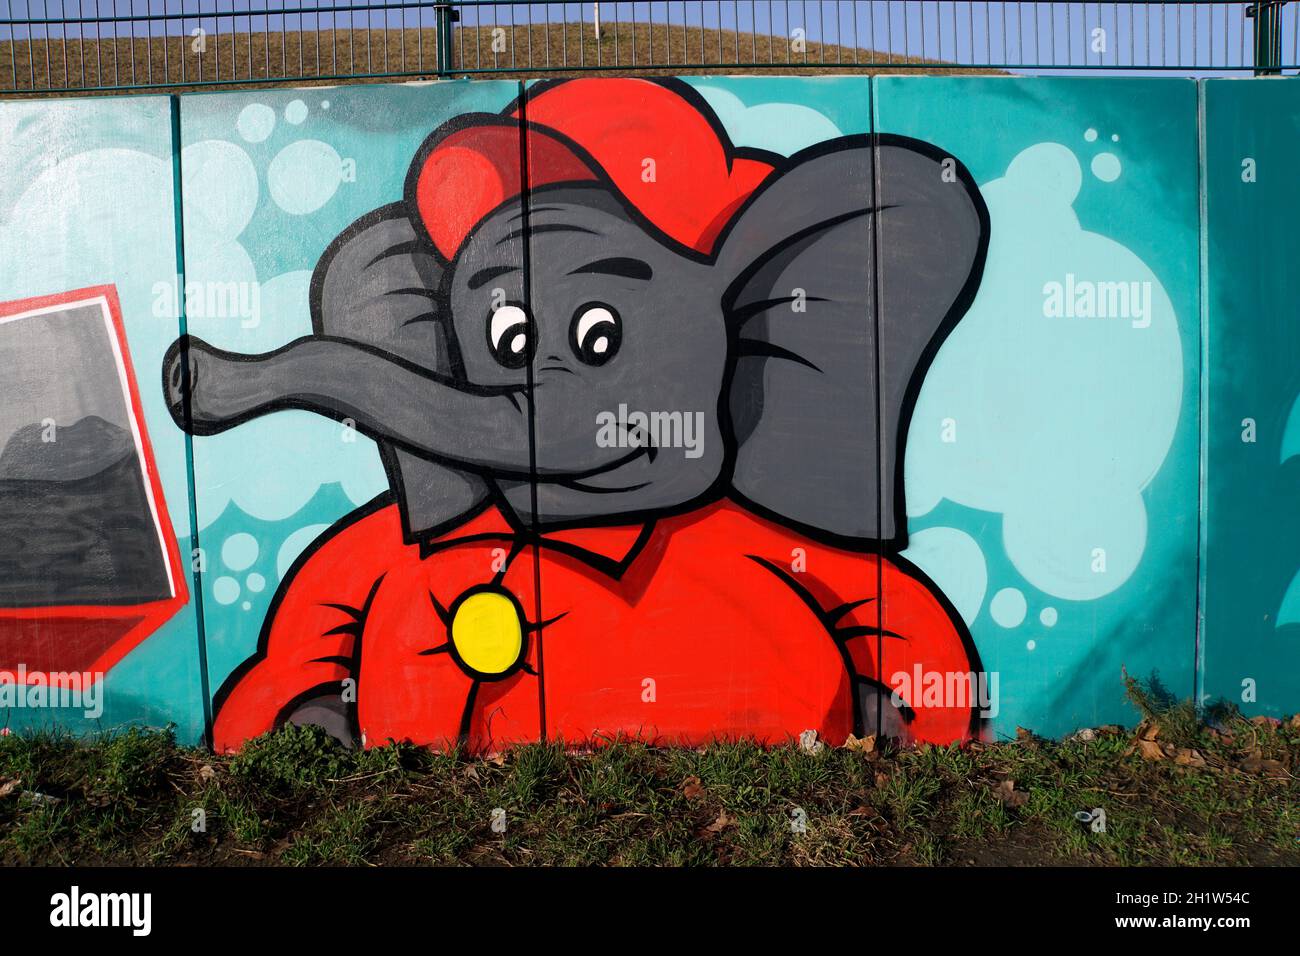 Graffity an einer Mauer - Elefant mit roter Jacke und Mütze, Köln, Nordrhein-Westfalen, Deutschland Stock Photo